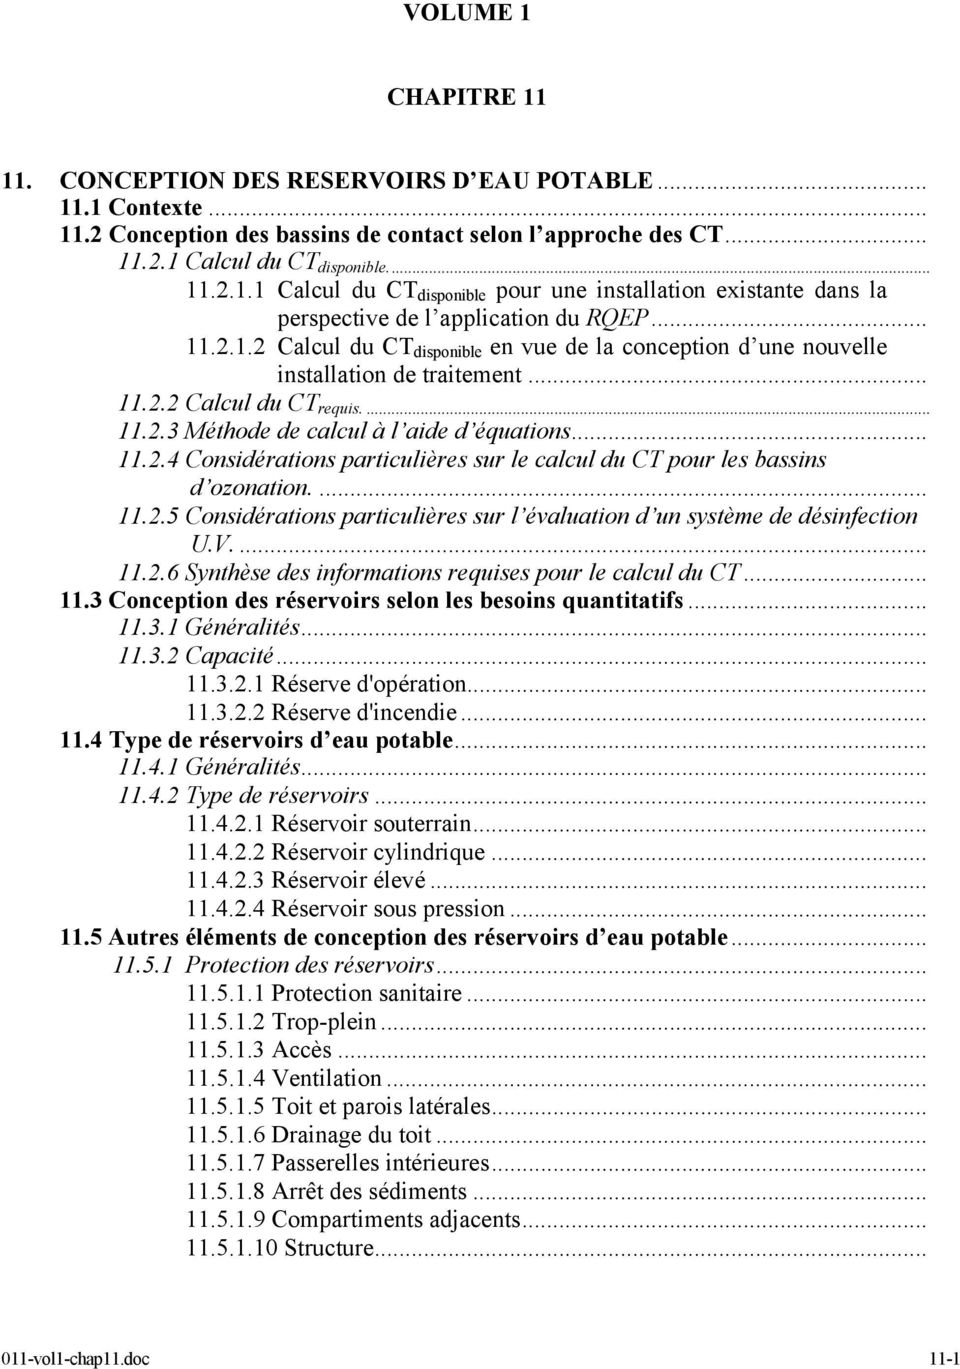 ... 11.2.5 Considérations particulières sur l évaluation d un système de désinfection U.V.... 11.2.6 Synthèse des informations requises pour le calcul du CT... 11.3 Conception des réservoirs selon les besoins quantitatifs.